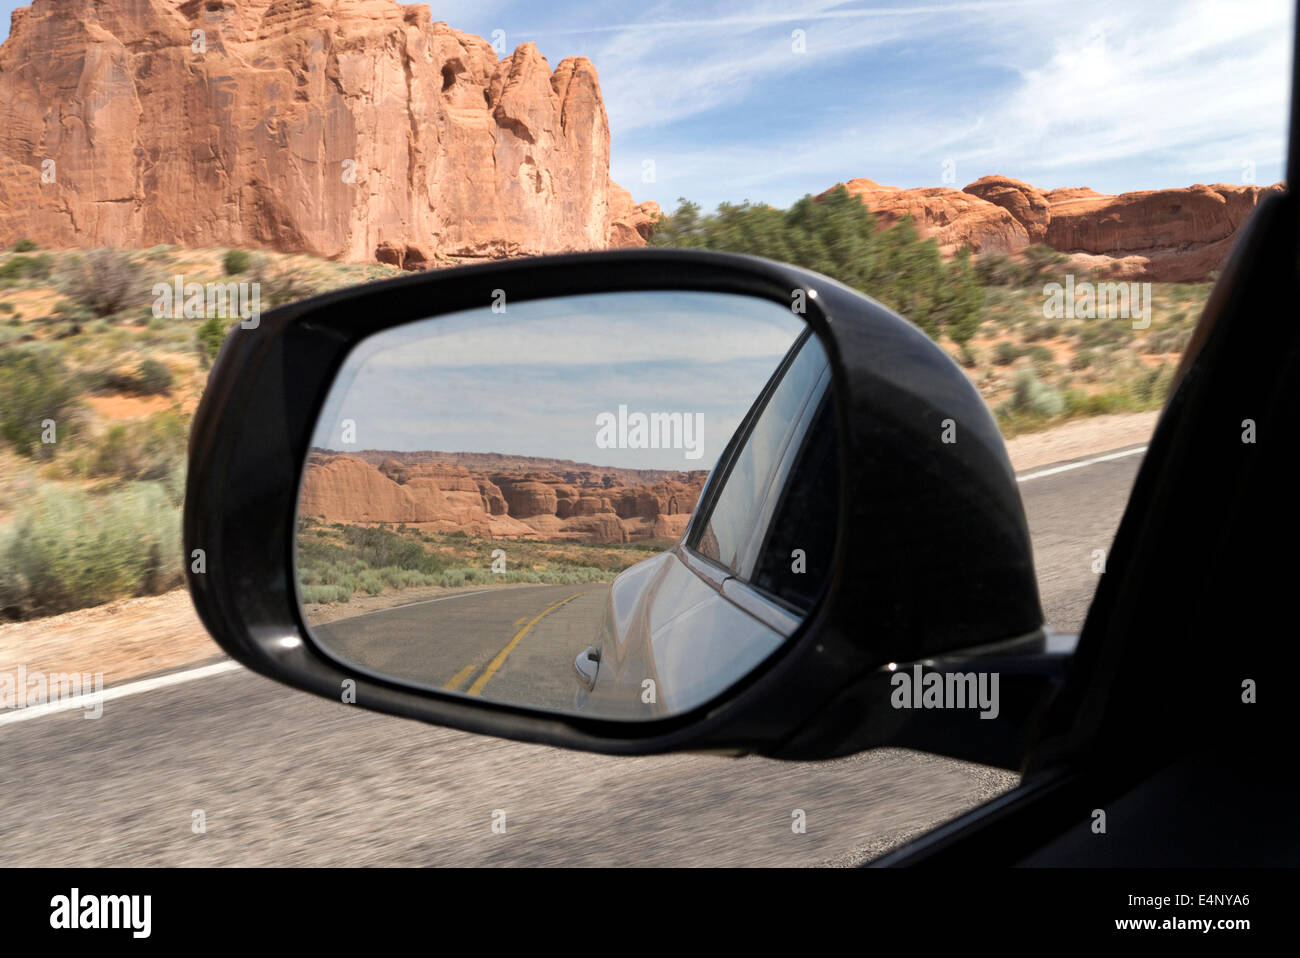 Vista en un coche espejo de rocas rojas país del sur de Utah, EE.UU. Foto de stock